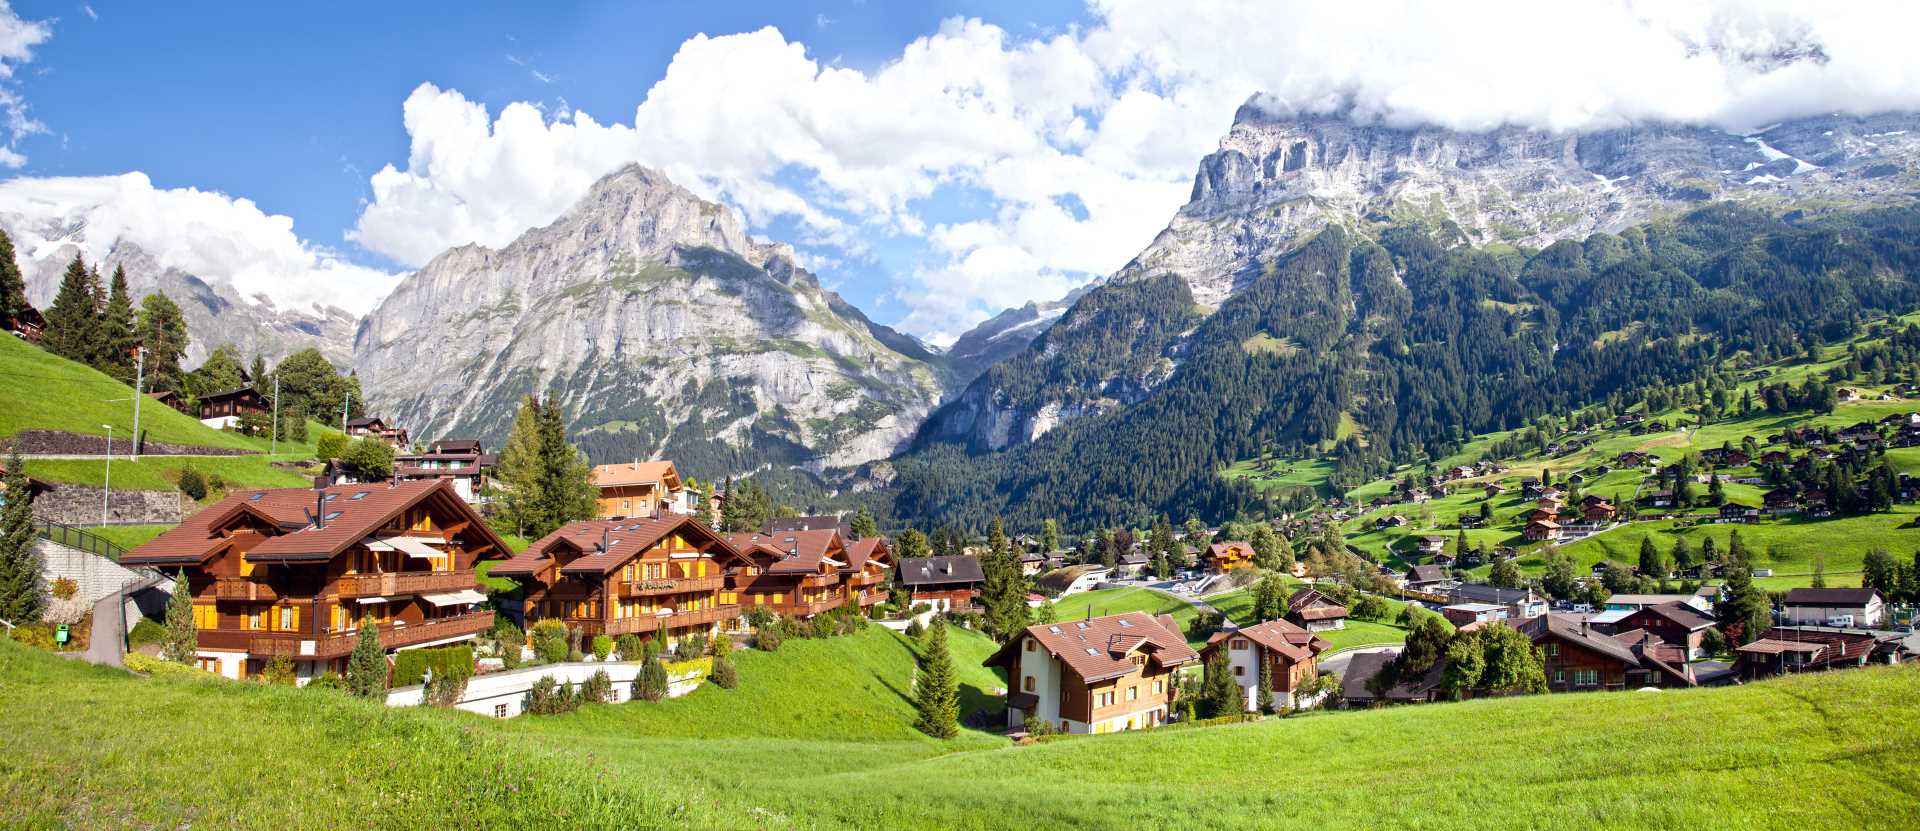 Grindelwald, Interlaken-Oberhasli, Berna, Svizzera - Campeggi in Svizzera